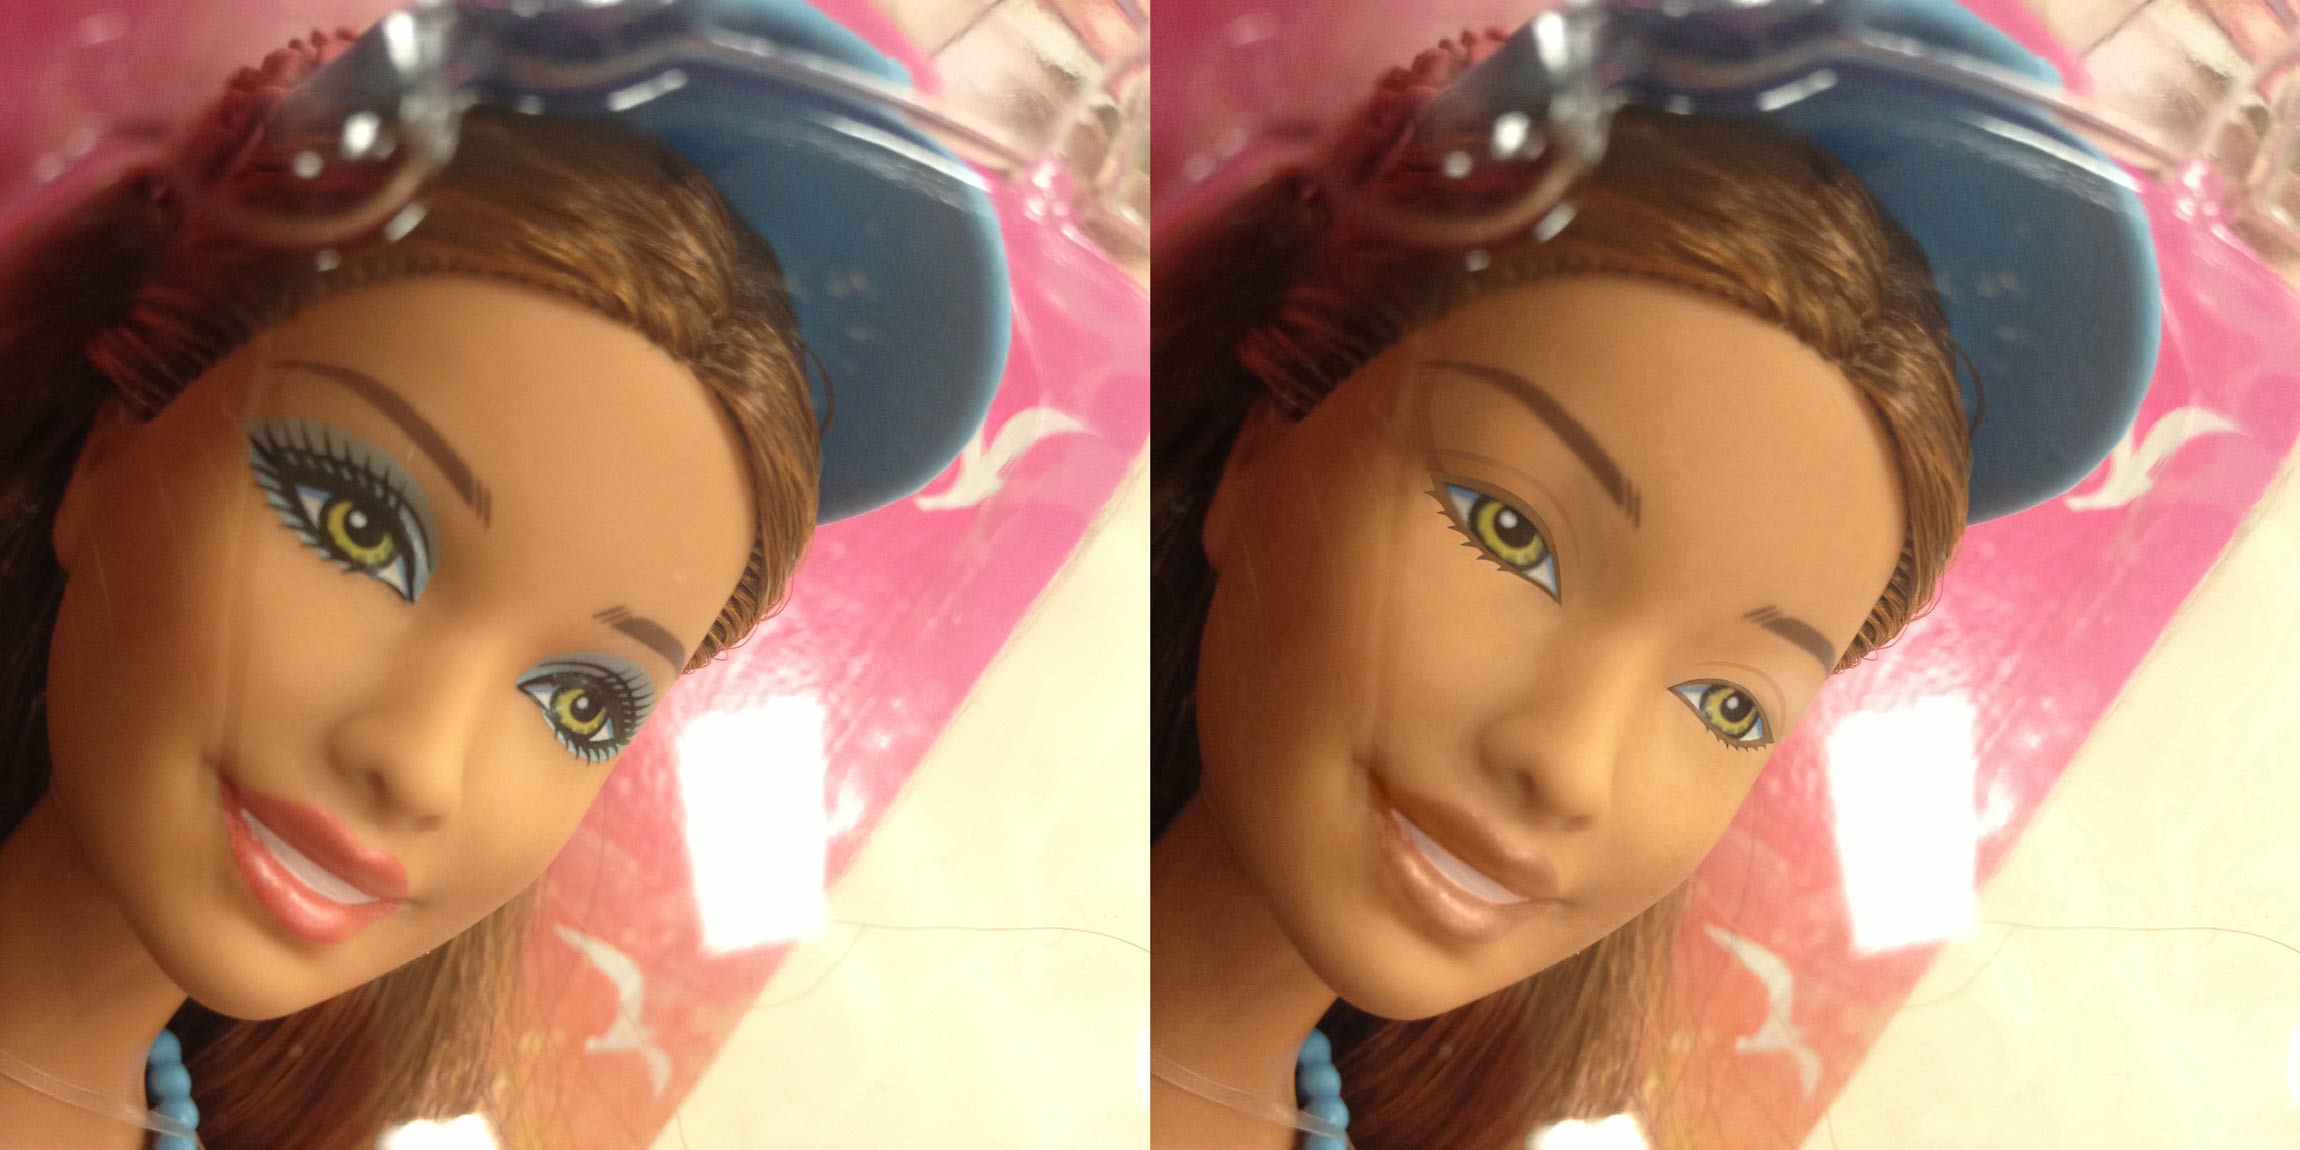 Disney Princess Dolls Without Makeup